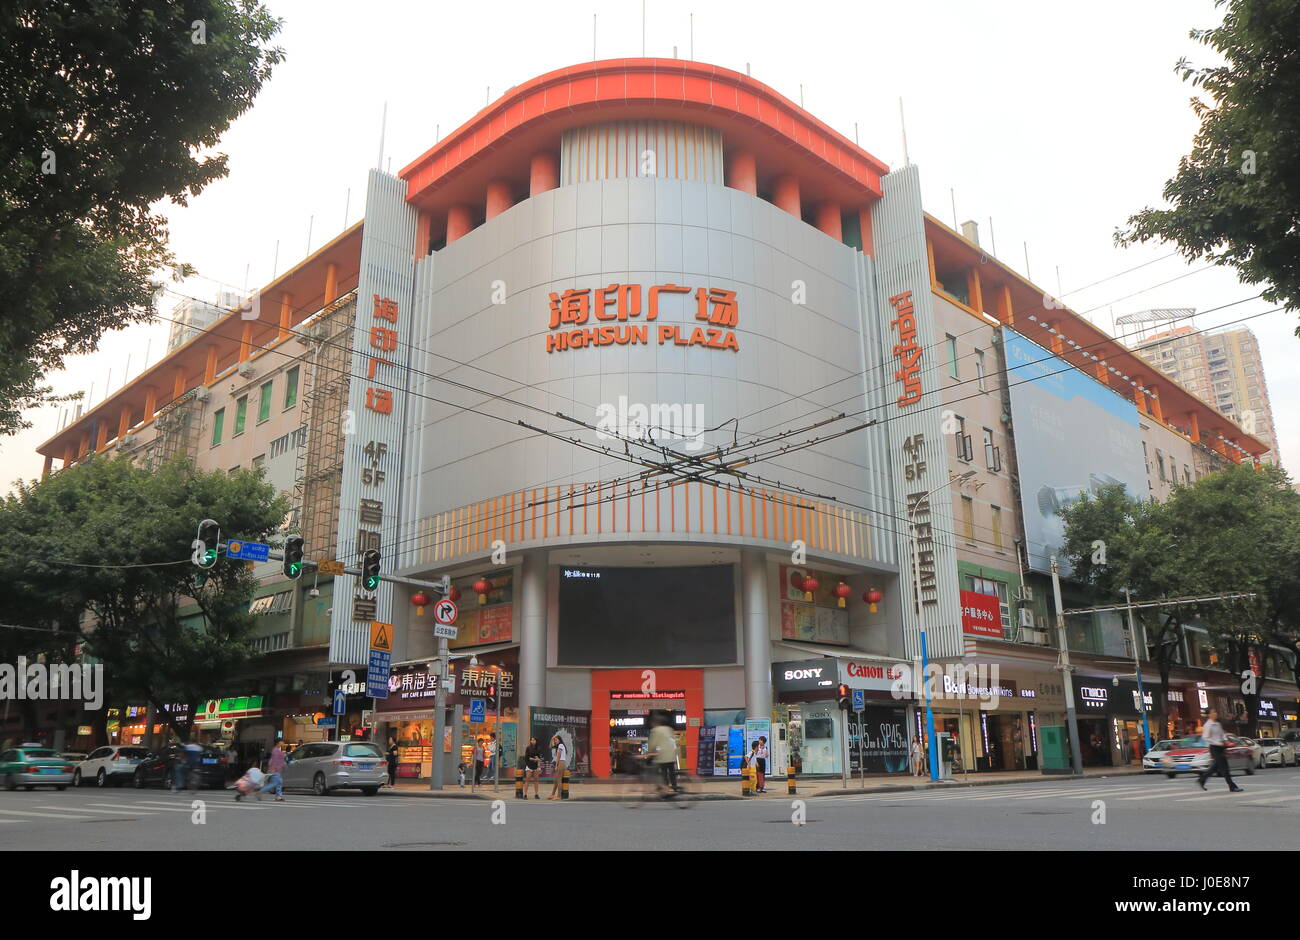 Personnes visitent Highsun Plaza à Guangzhou en Chine. Highsun Plaza est un centre commercial situé dans le quartier commerçant de Haiyin. Banque D'Images